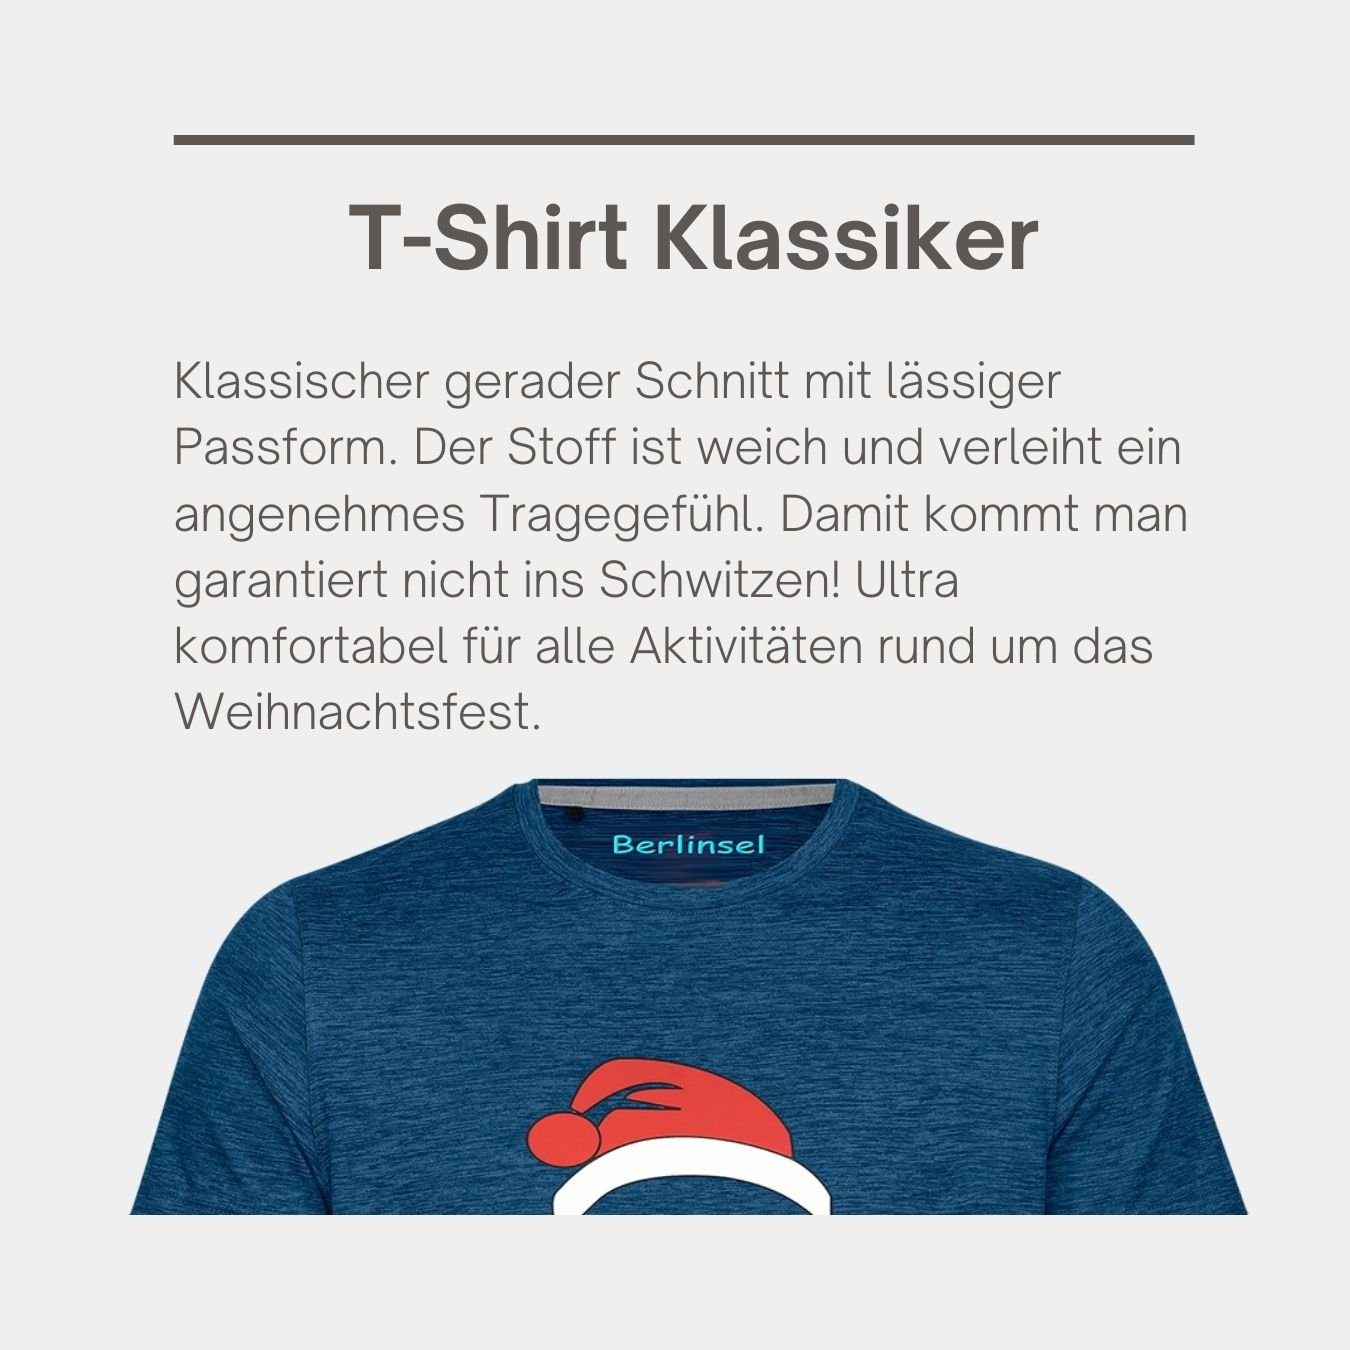 Berlinsel T-Shirt Weihnachtsfeier, Weihnachtsfoto blau Weihnachtsoutfit Printshirt Herren Weihnachtsgeschenk, Männer Weihnachtsshirt